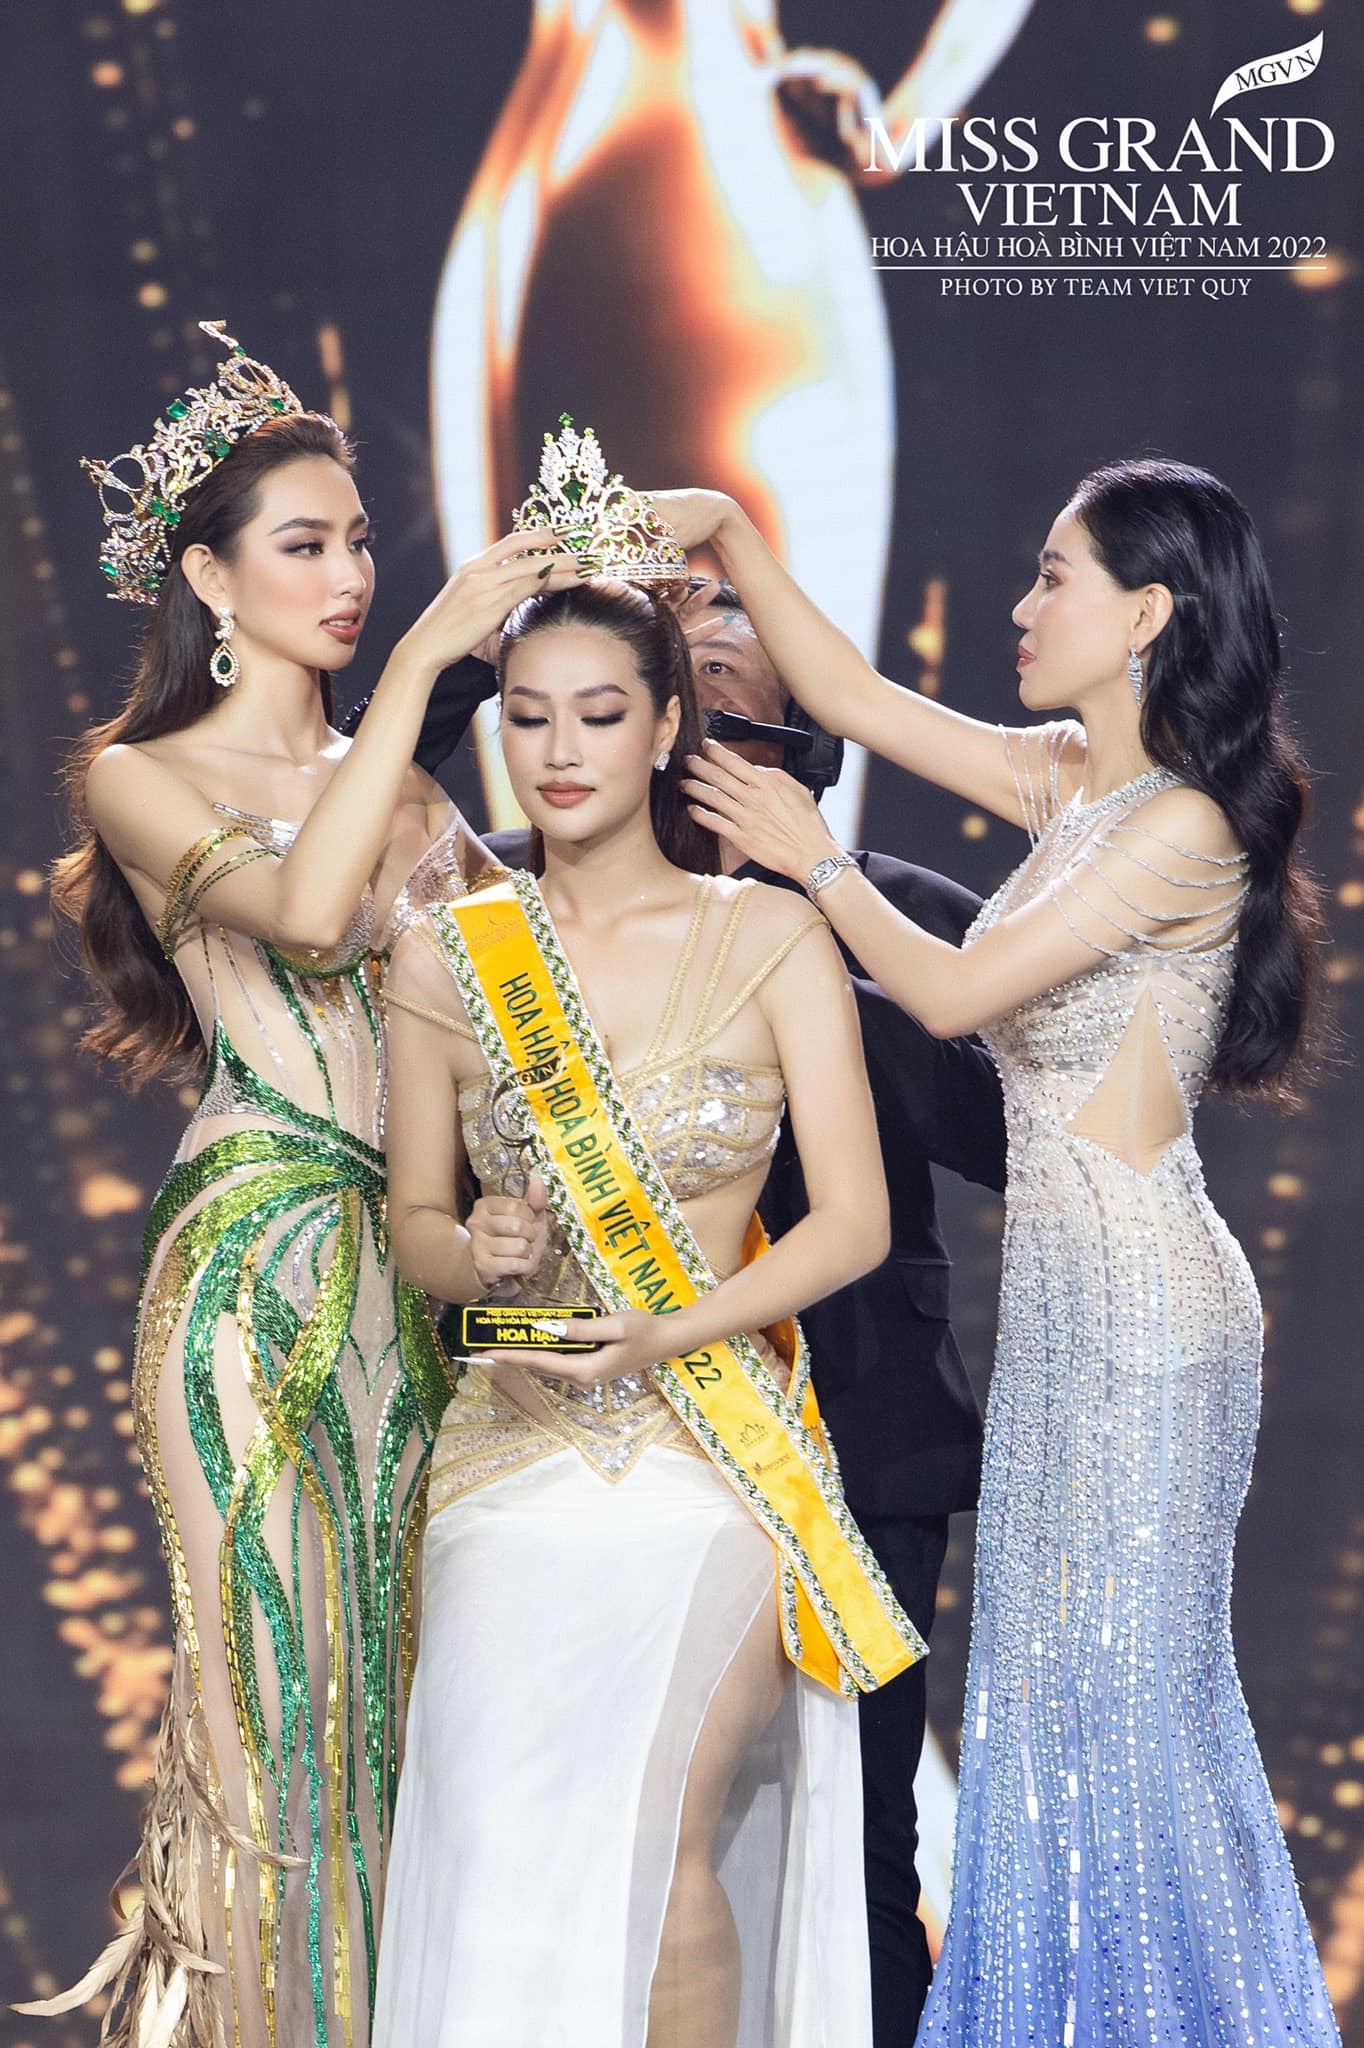 Hành trình chinh phục vương miện của tân Hoa hậu Hòa bình Việt Nam 2022-9